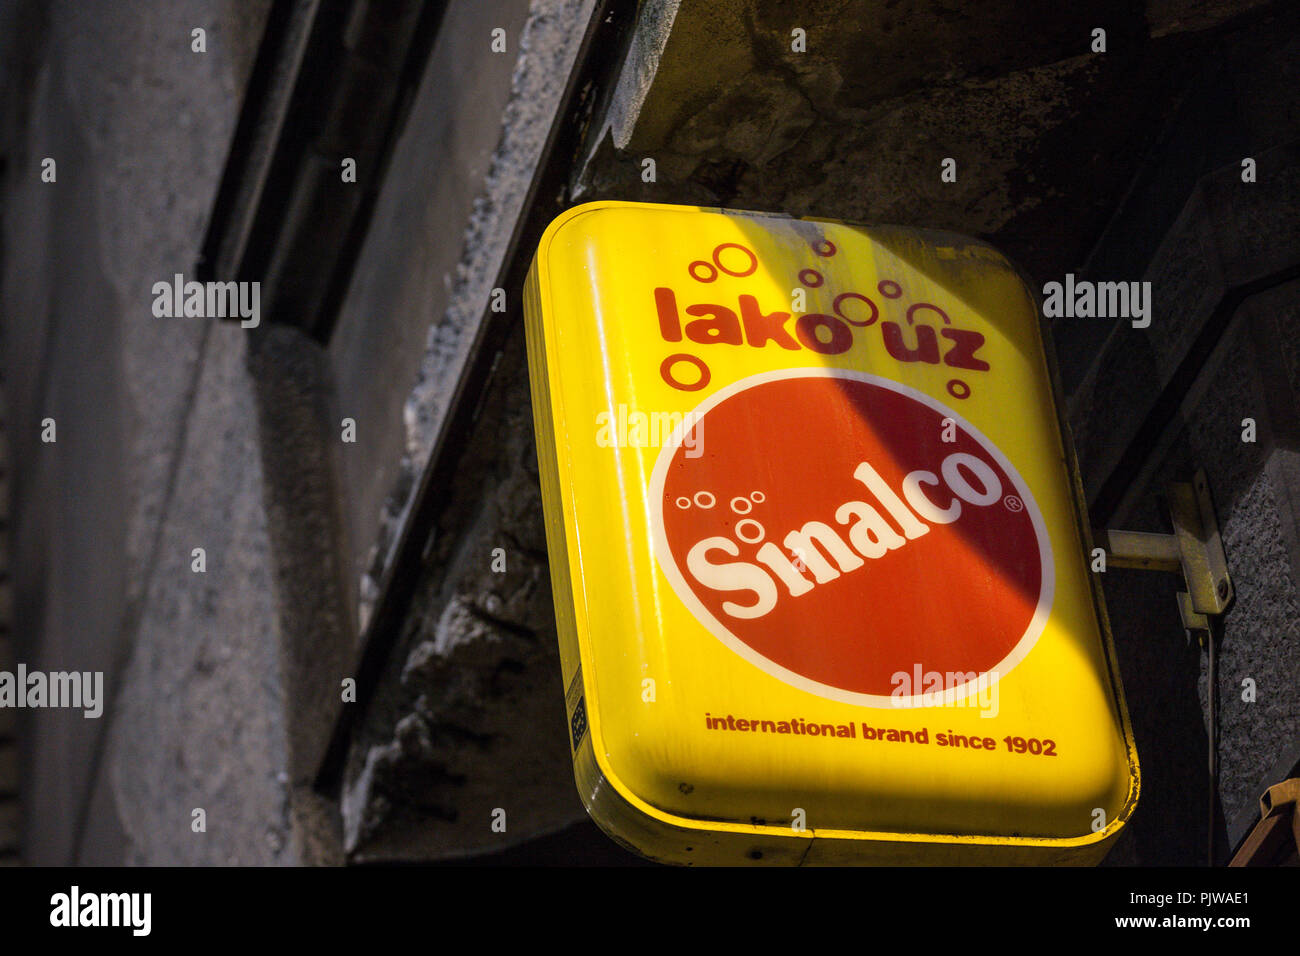 A Belgrado, in Serbia - 3 Settembre 2018: Sinalco logo sul loro rivenditore di Belgrado. Sinalco è un tedesco analcolico bevanda analcolica gassata la cui vendita io Foto Stock